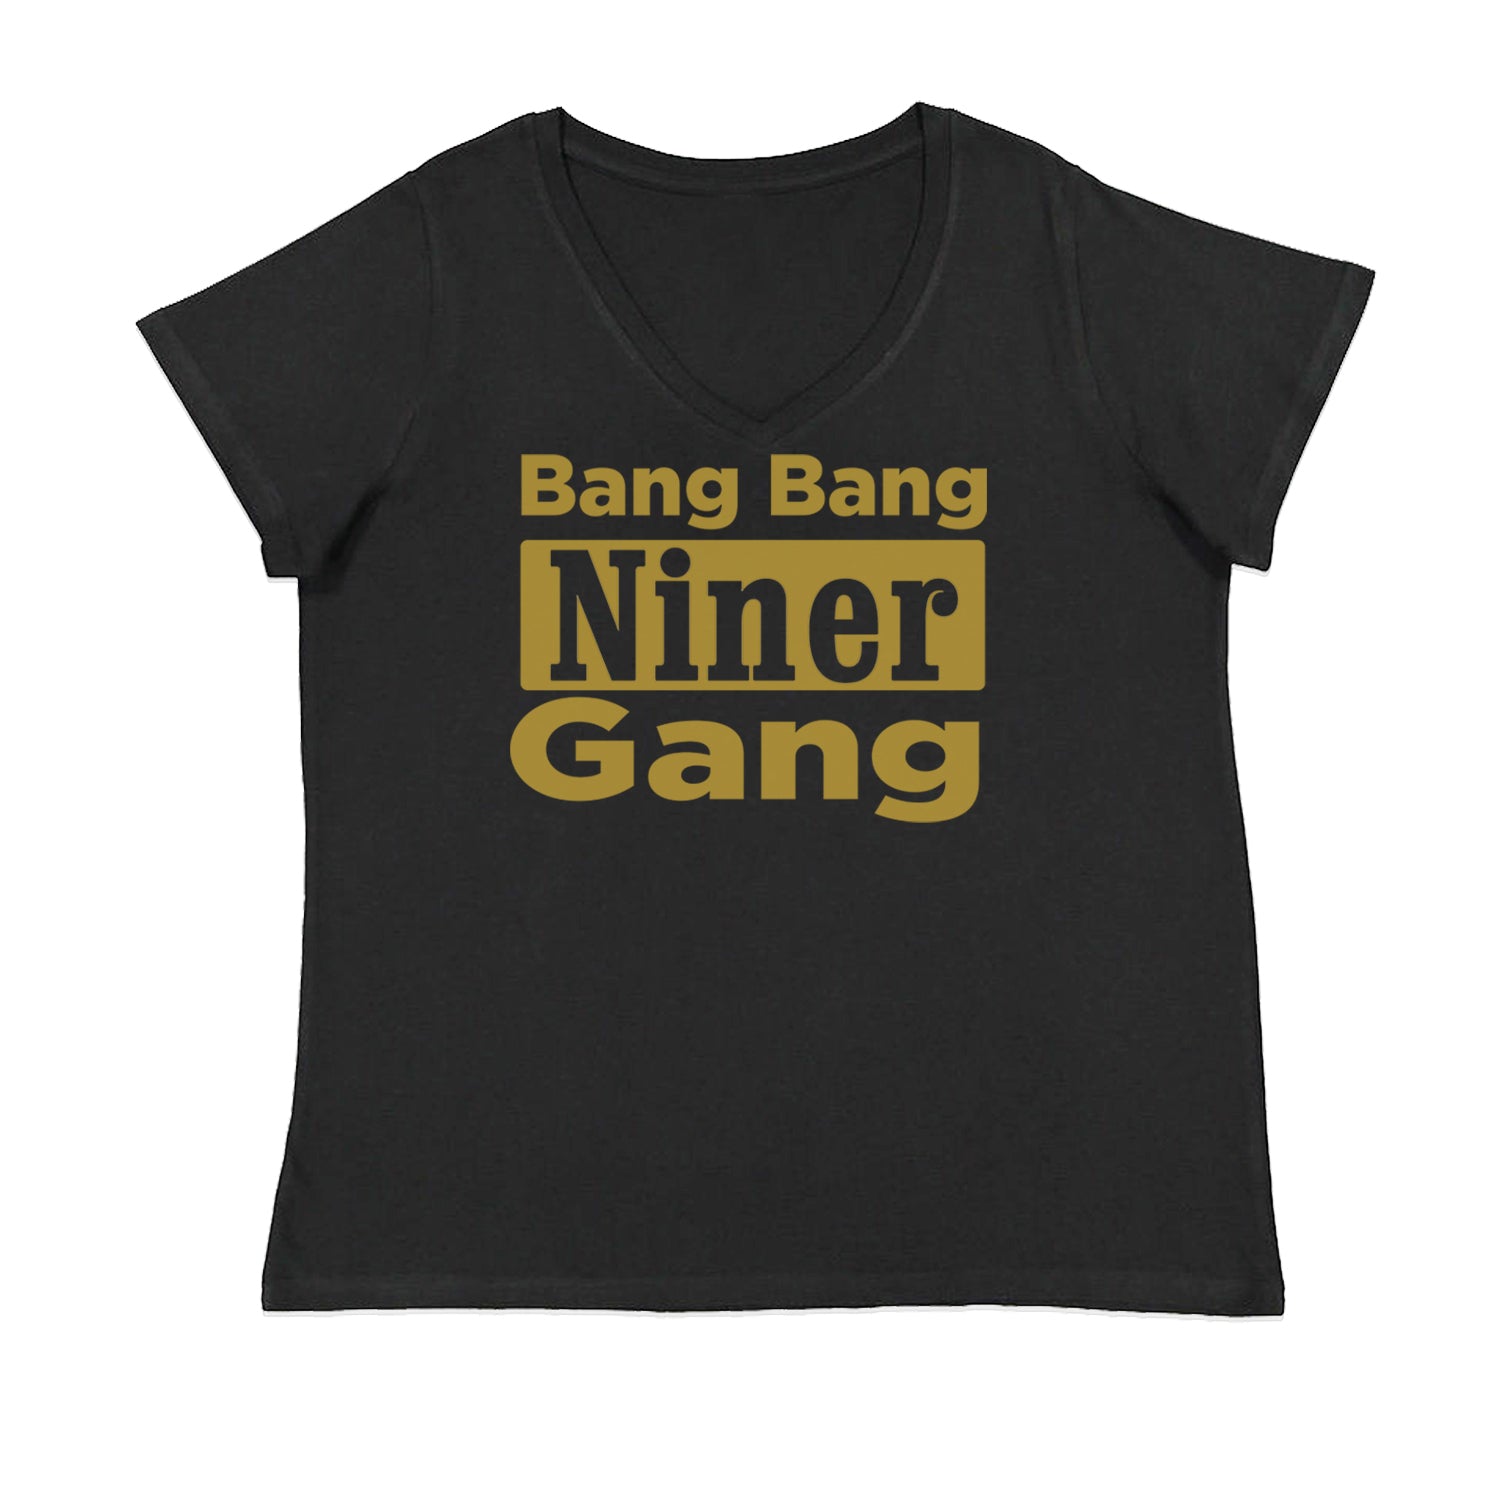 Bang Bang Niner Gang San Francisco Womens Plus Size V-Neck T-shirt